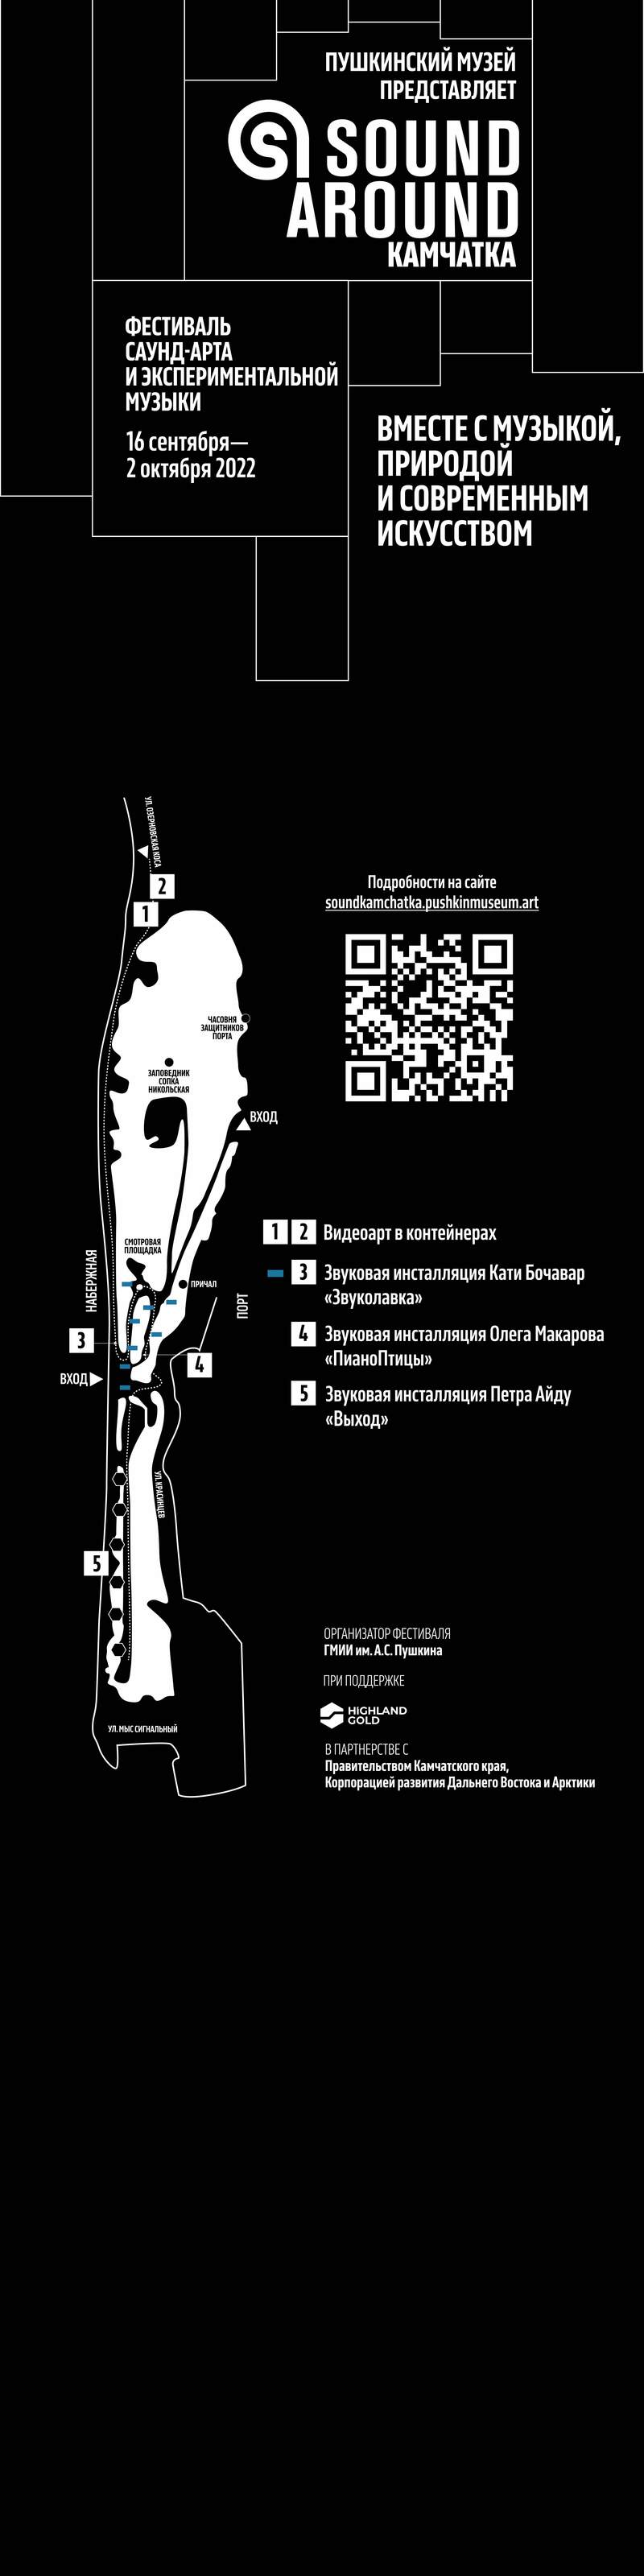 Макеты с общей информацией и схемой размещения звуковых инсталляций в рамках фестиваля «Sound Around Камчатка» для информационной стеллы